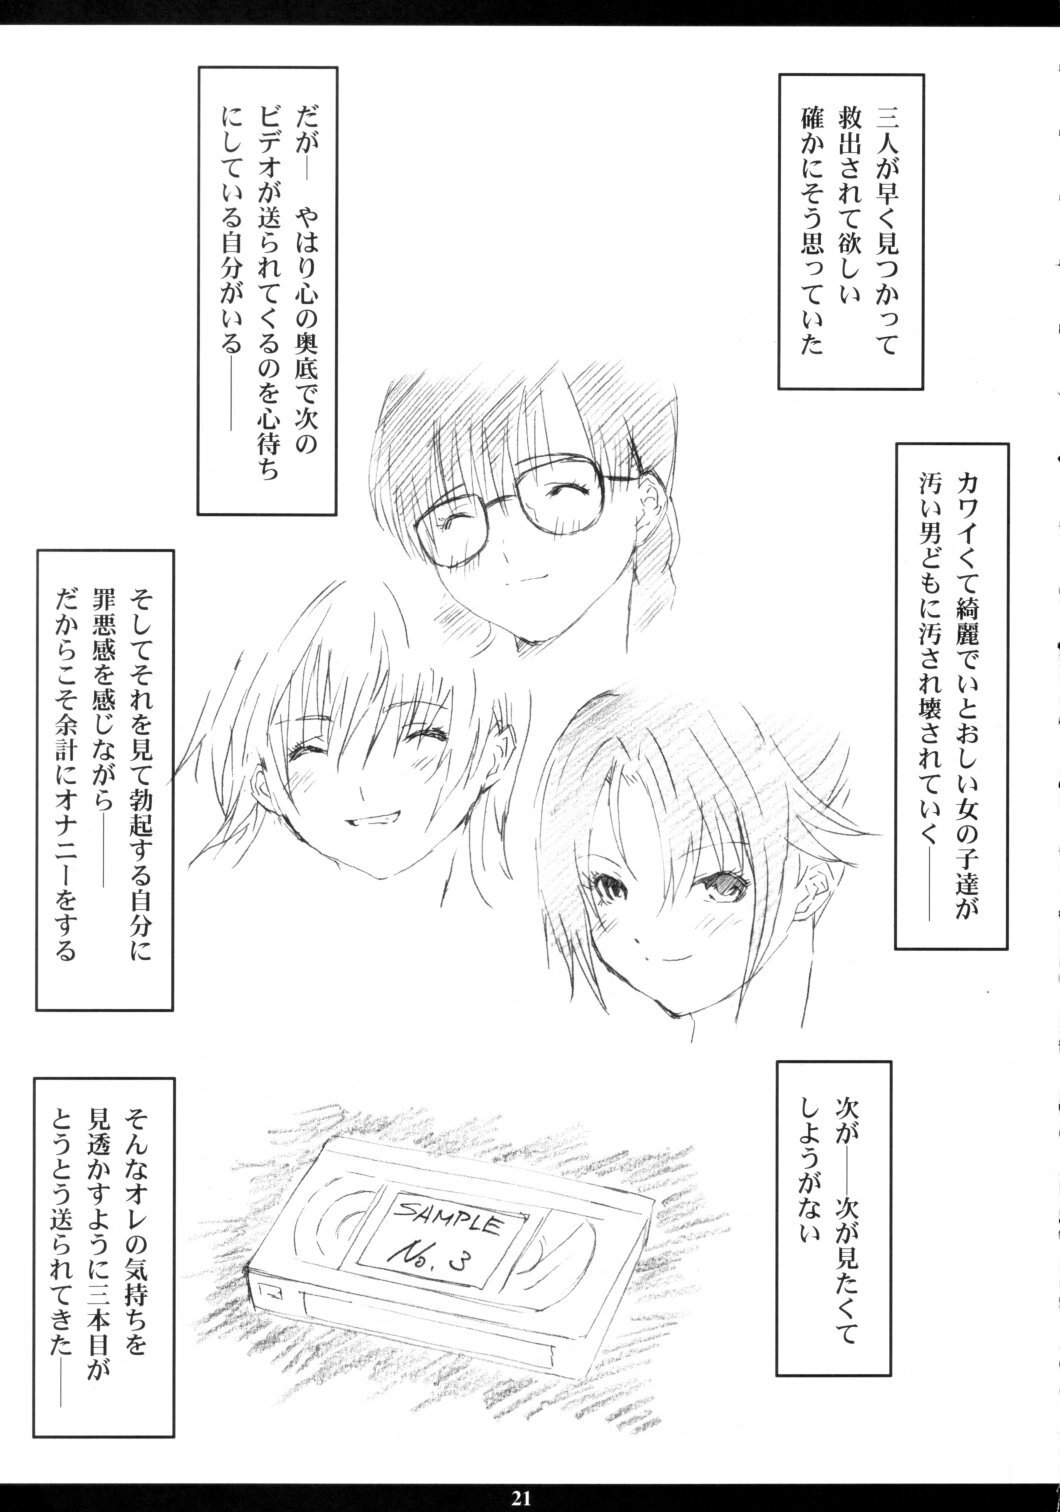 [M (Amano Ameno)] Ichigo MAX% (Ichigo 100%) [2003-02] page 20 full